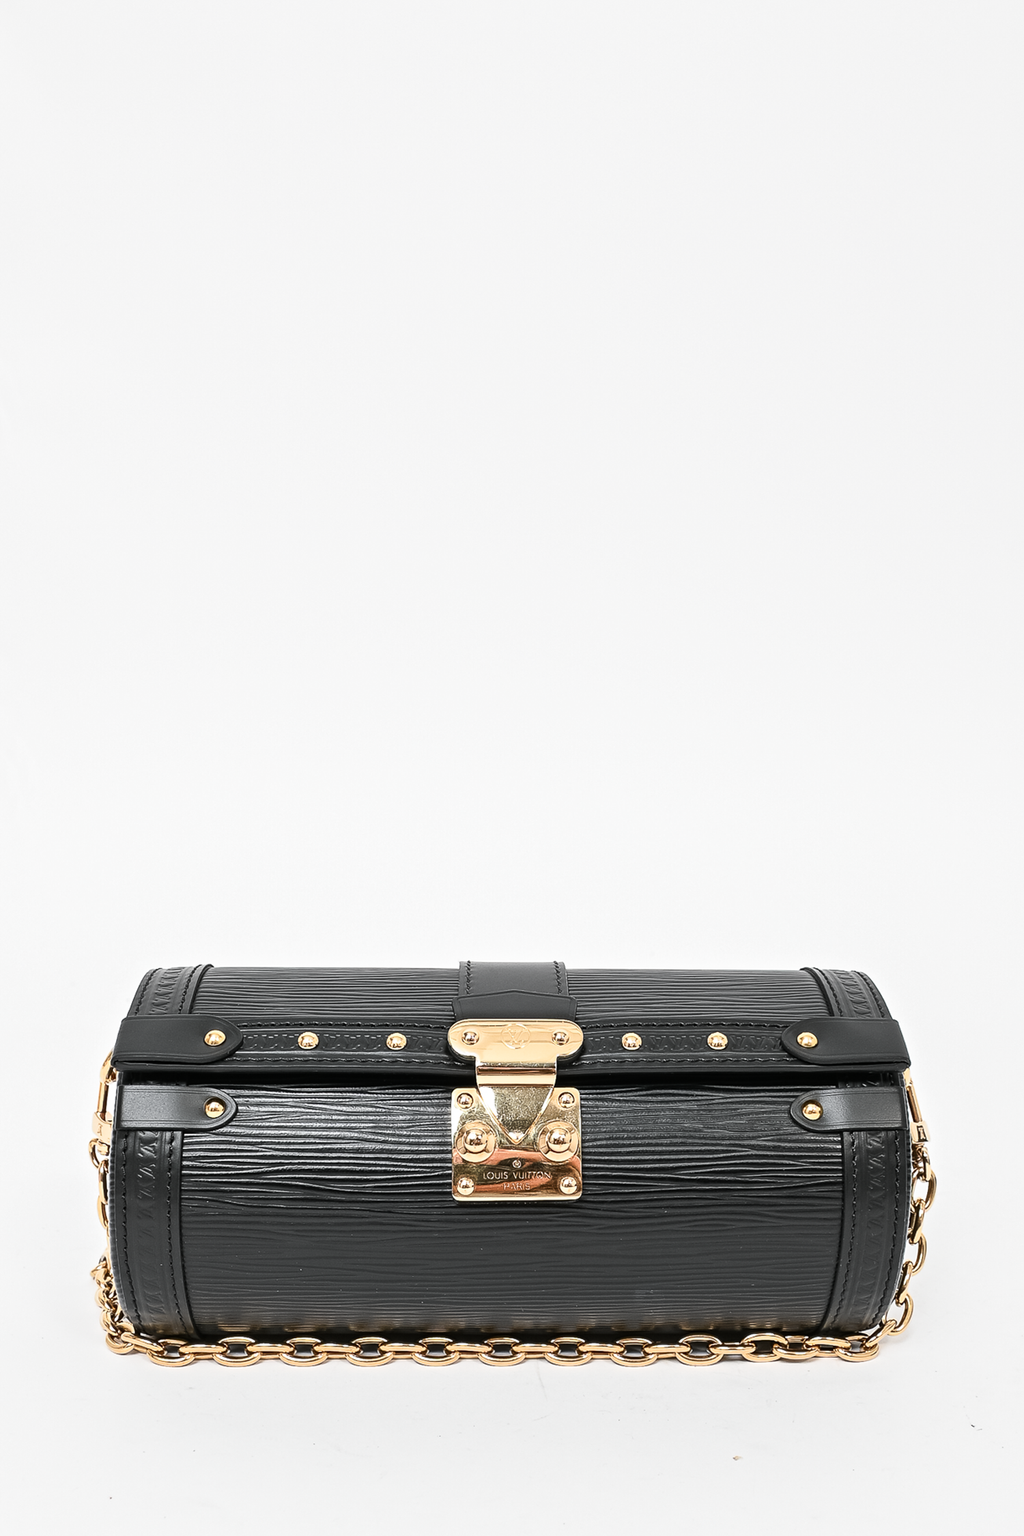 Louis Vuitton 2021 Black Epi Leather Papillon Trunk Bag w/ Chain